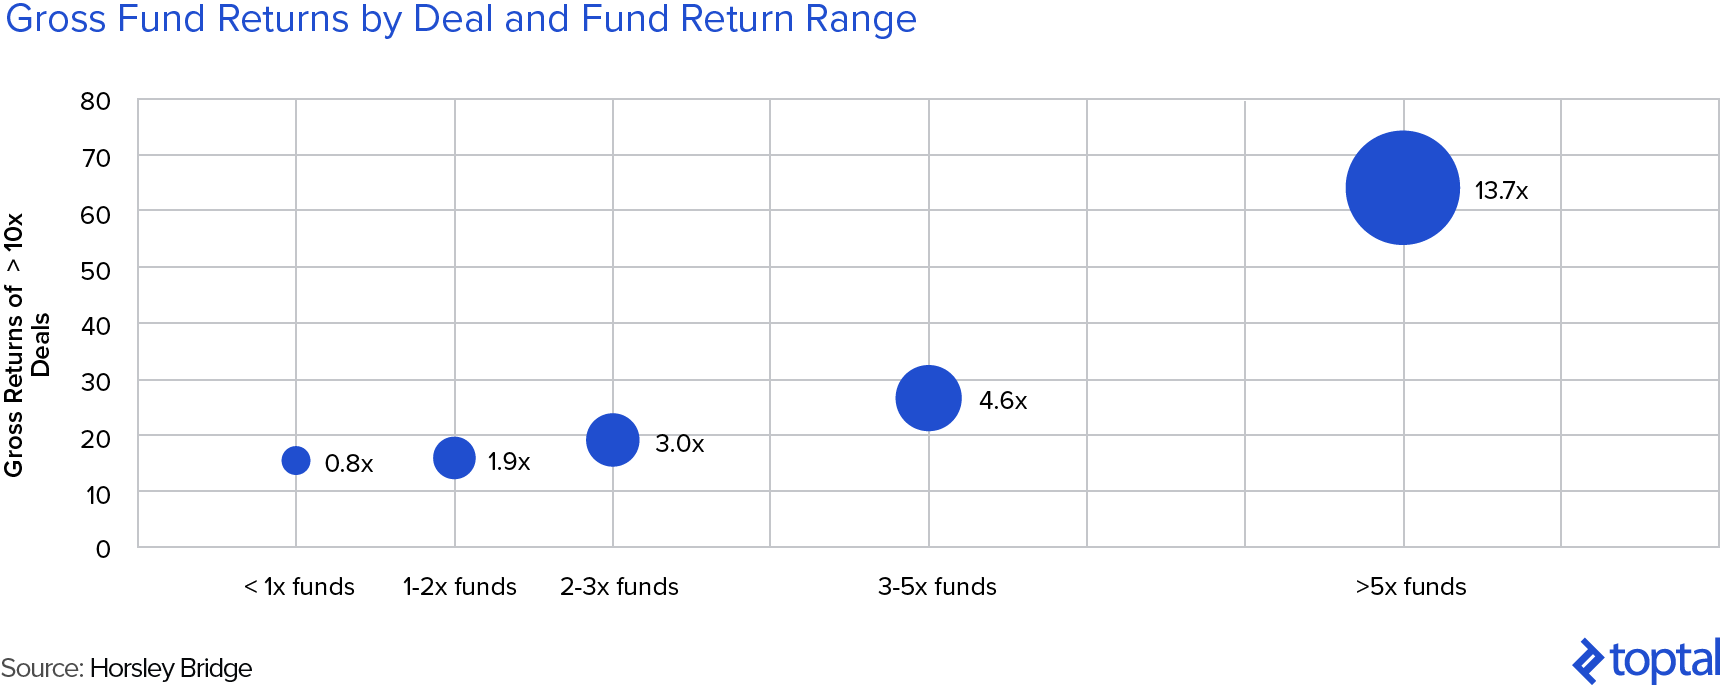 风险投资基金总回报与超过10倍交易的回报之比与基金回报范围之比:最好的风险投资基金有更多的失败，但更大的成功